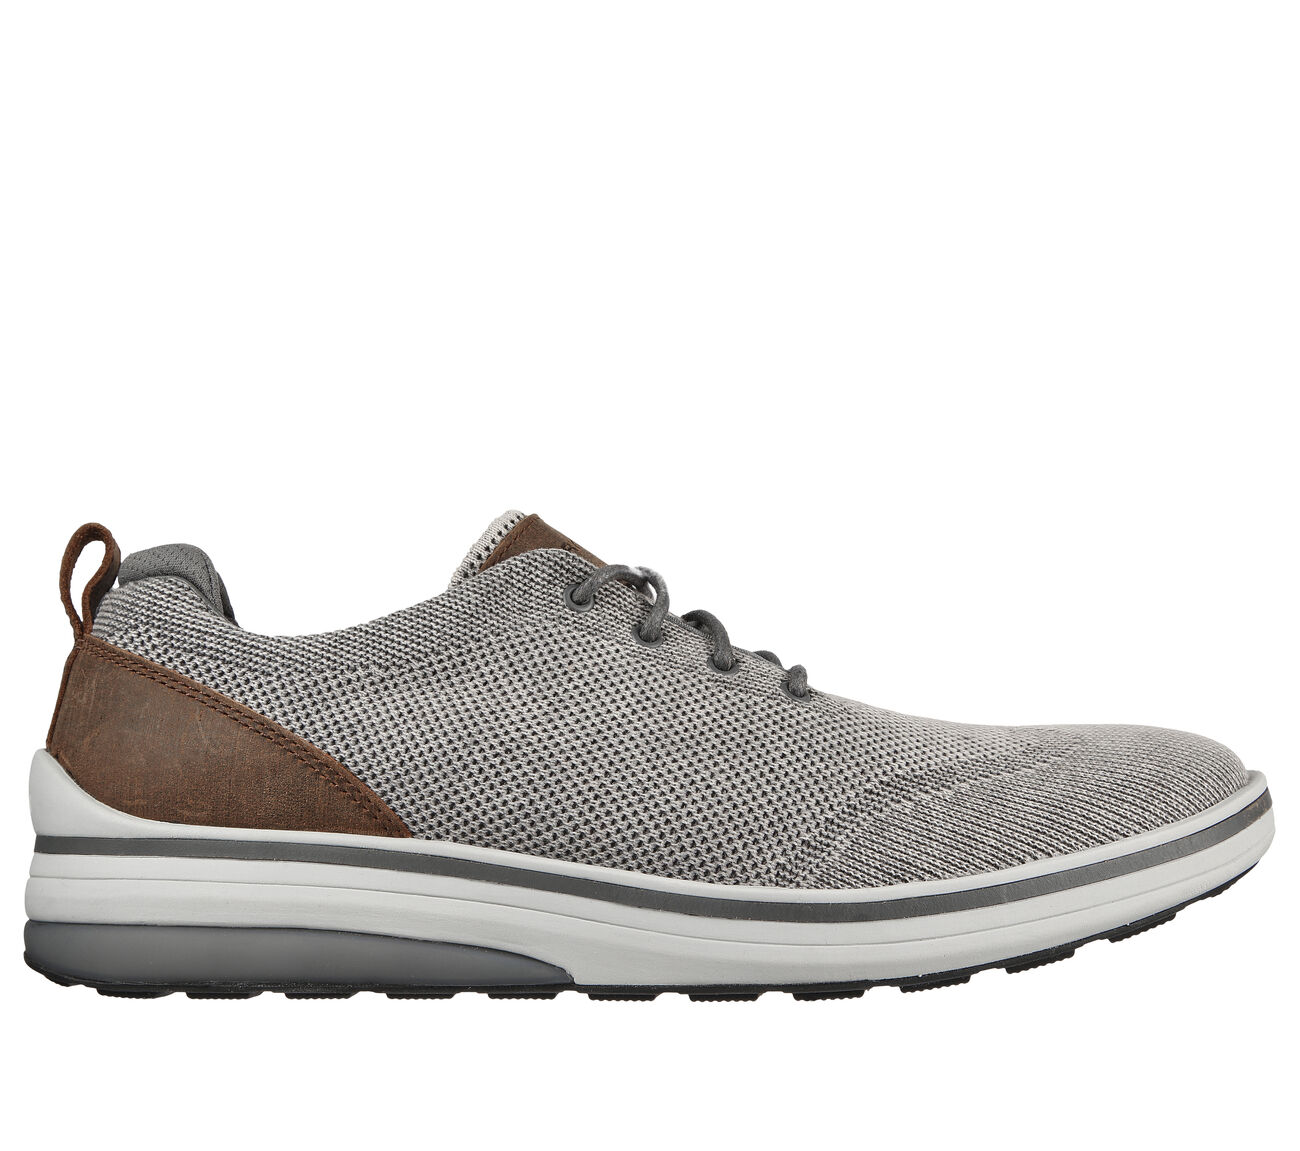 Skechers Zapato Oxford 65896 para hombre